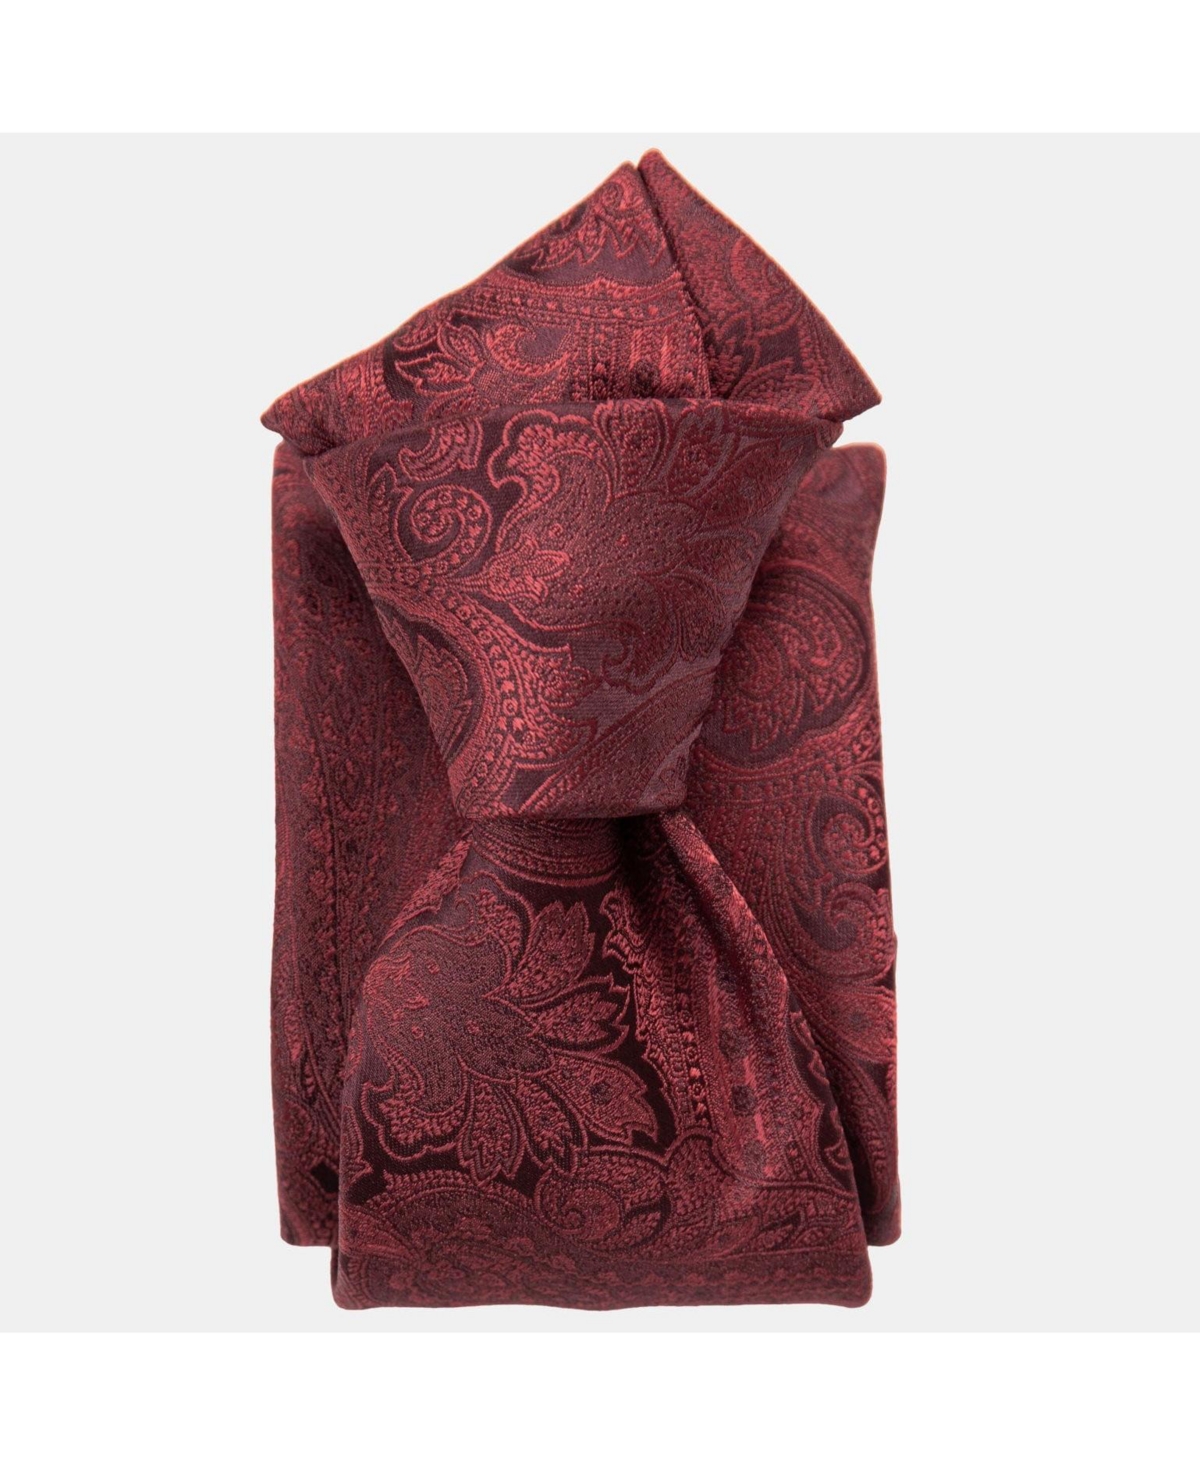 Vienna - Silk Jacquard Tie for Men - Burgundy